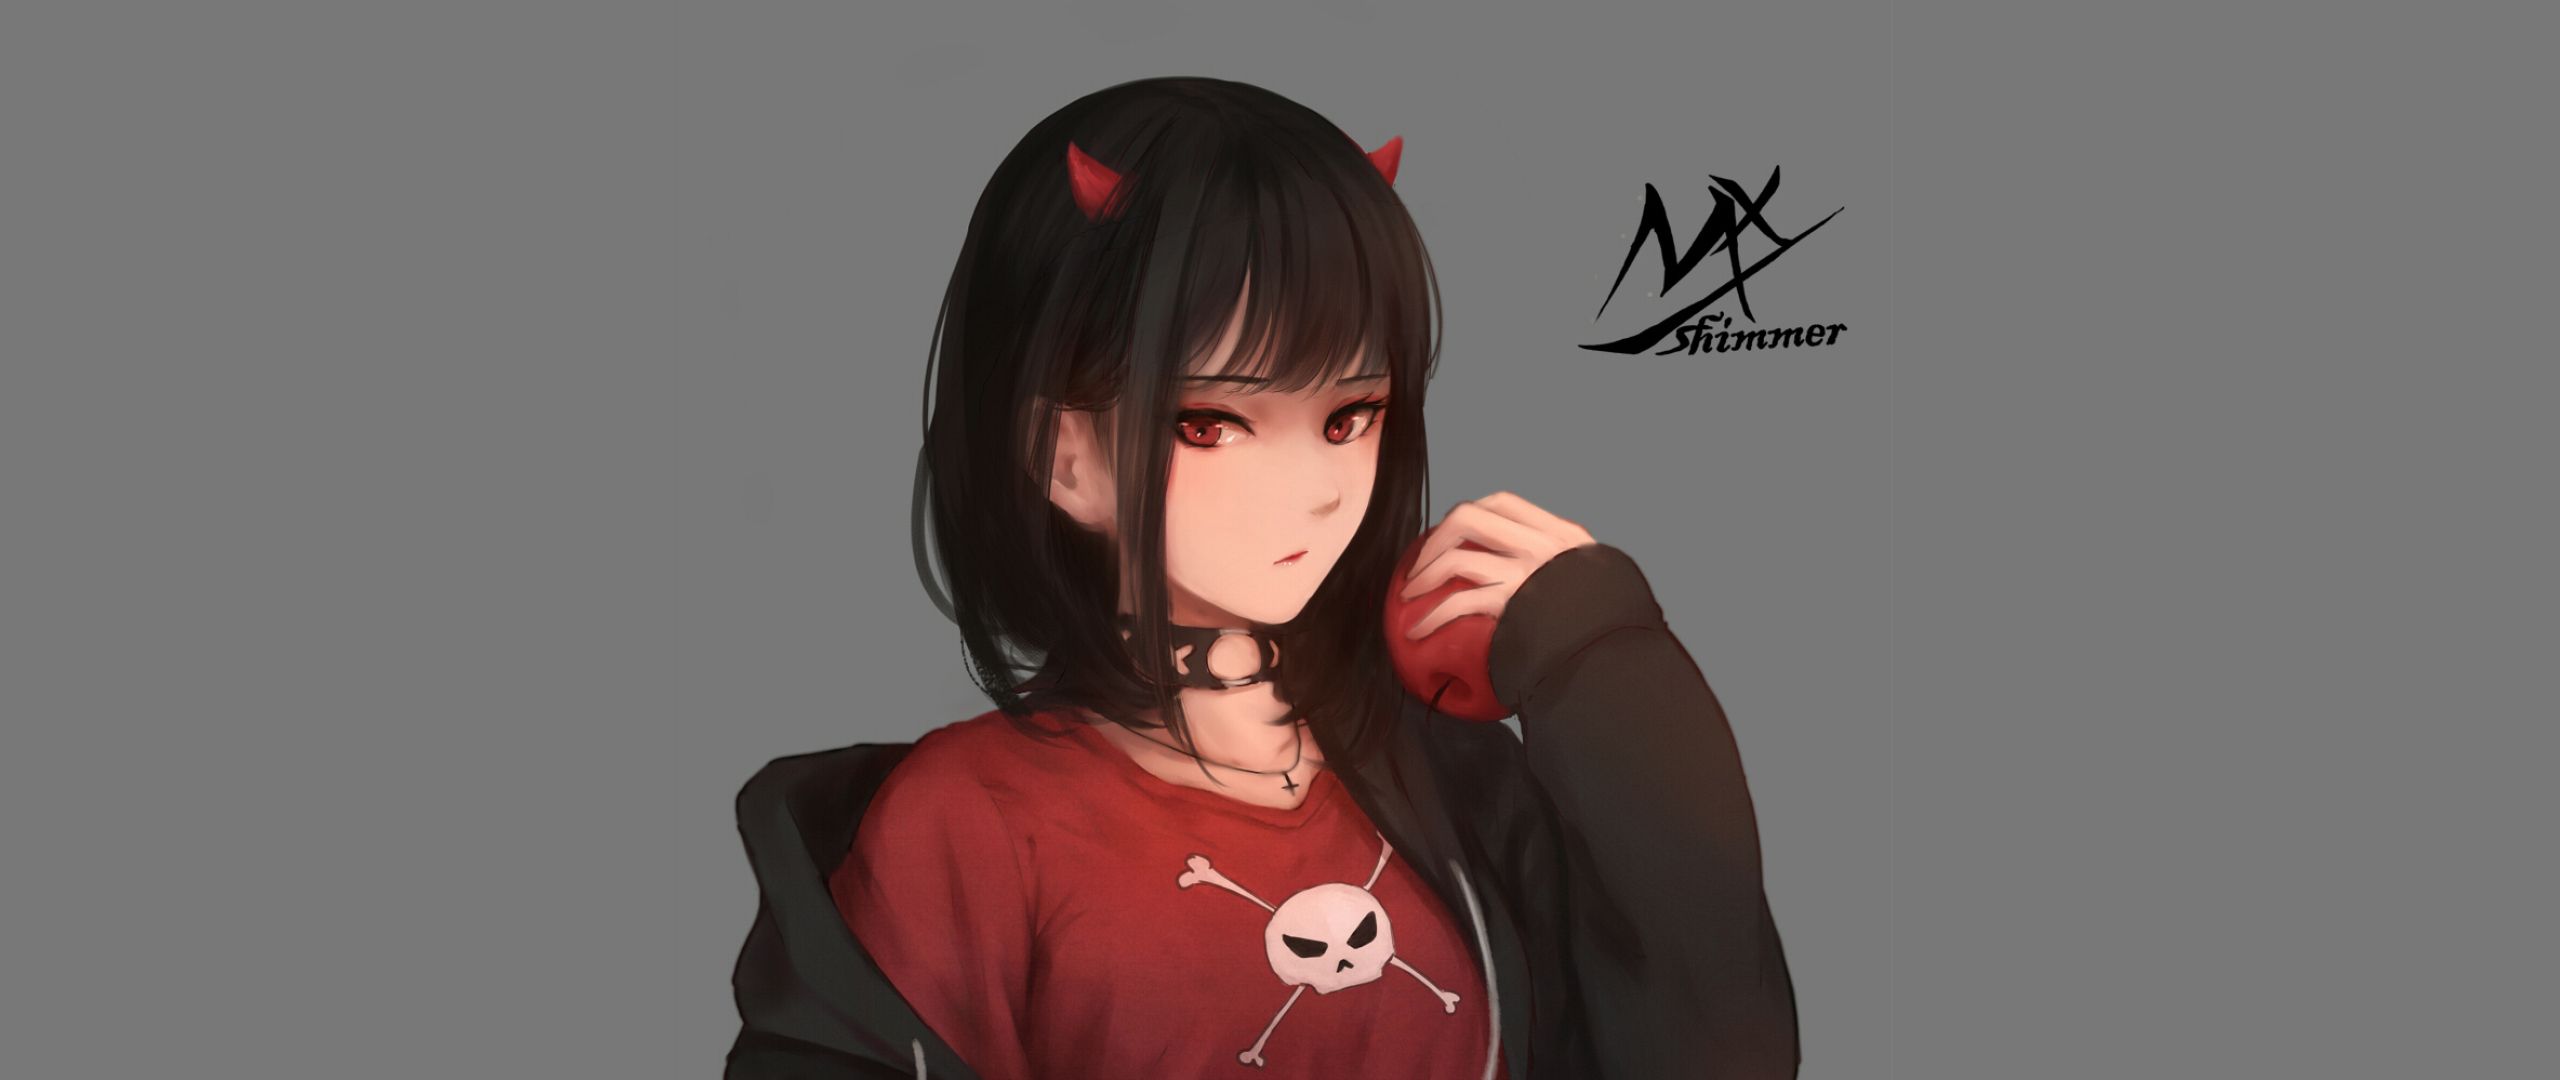 Anime Wallpaper Girl Demon Wallpaper & Background Download